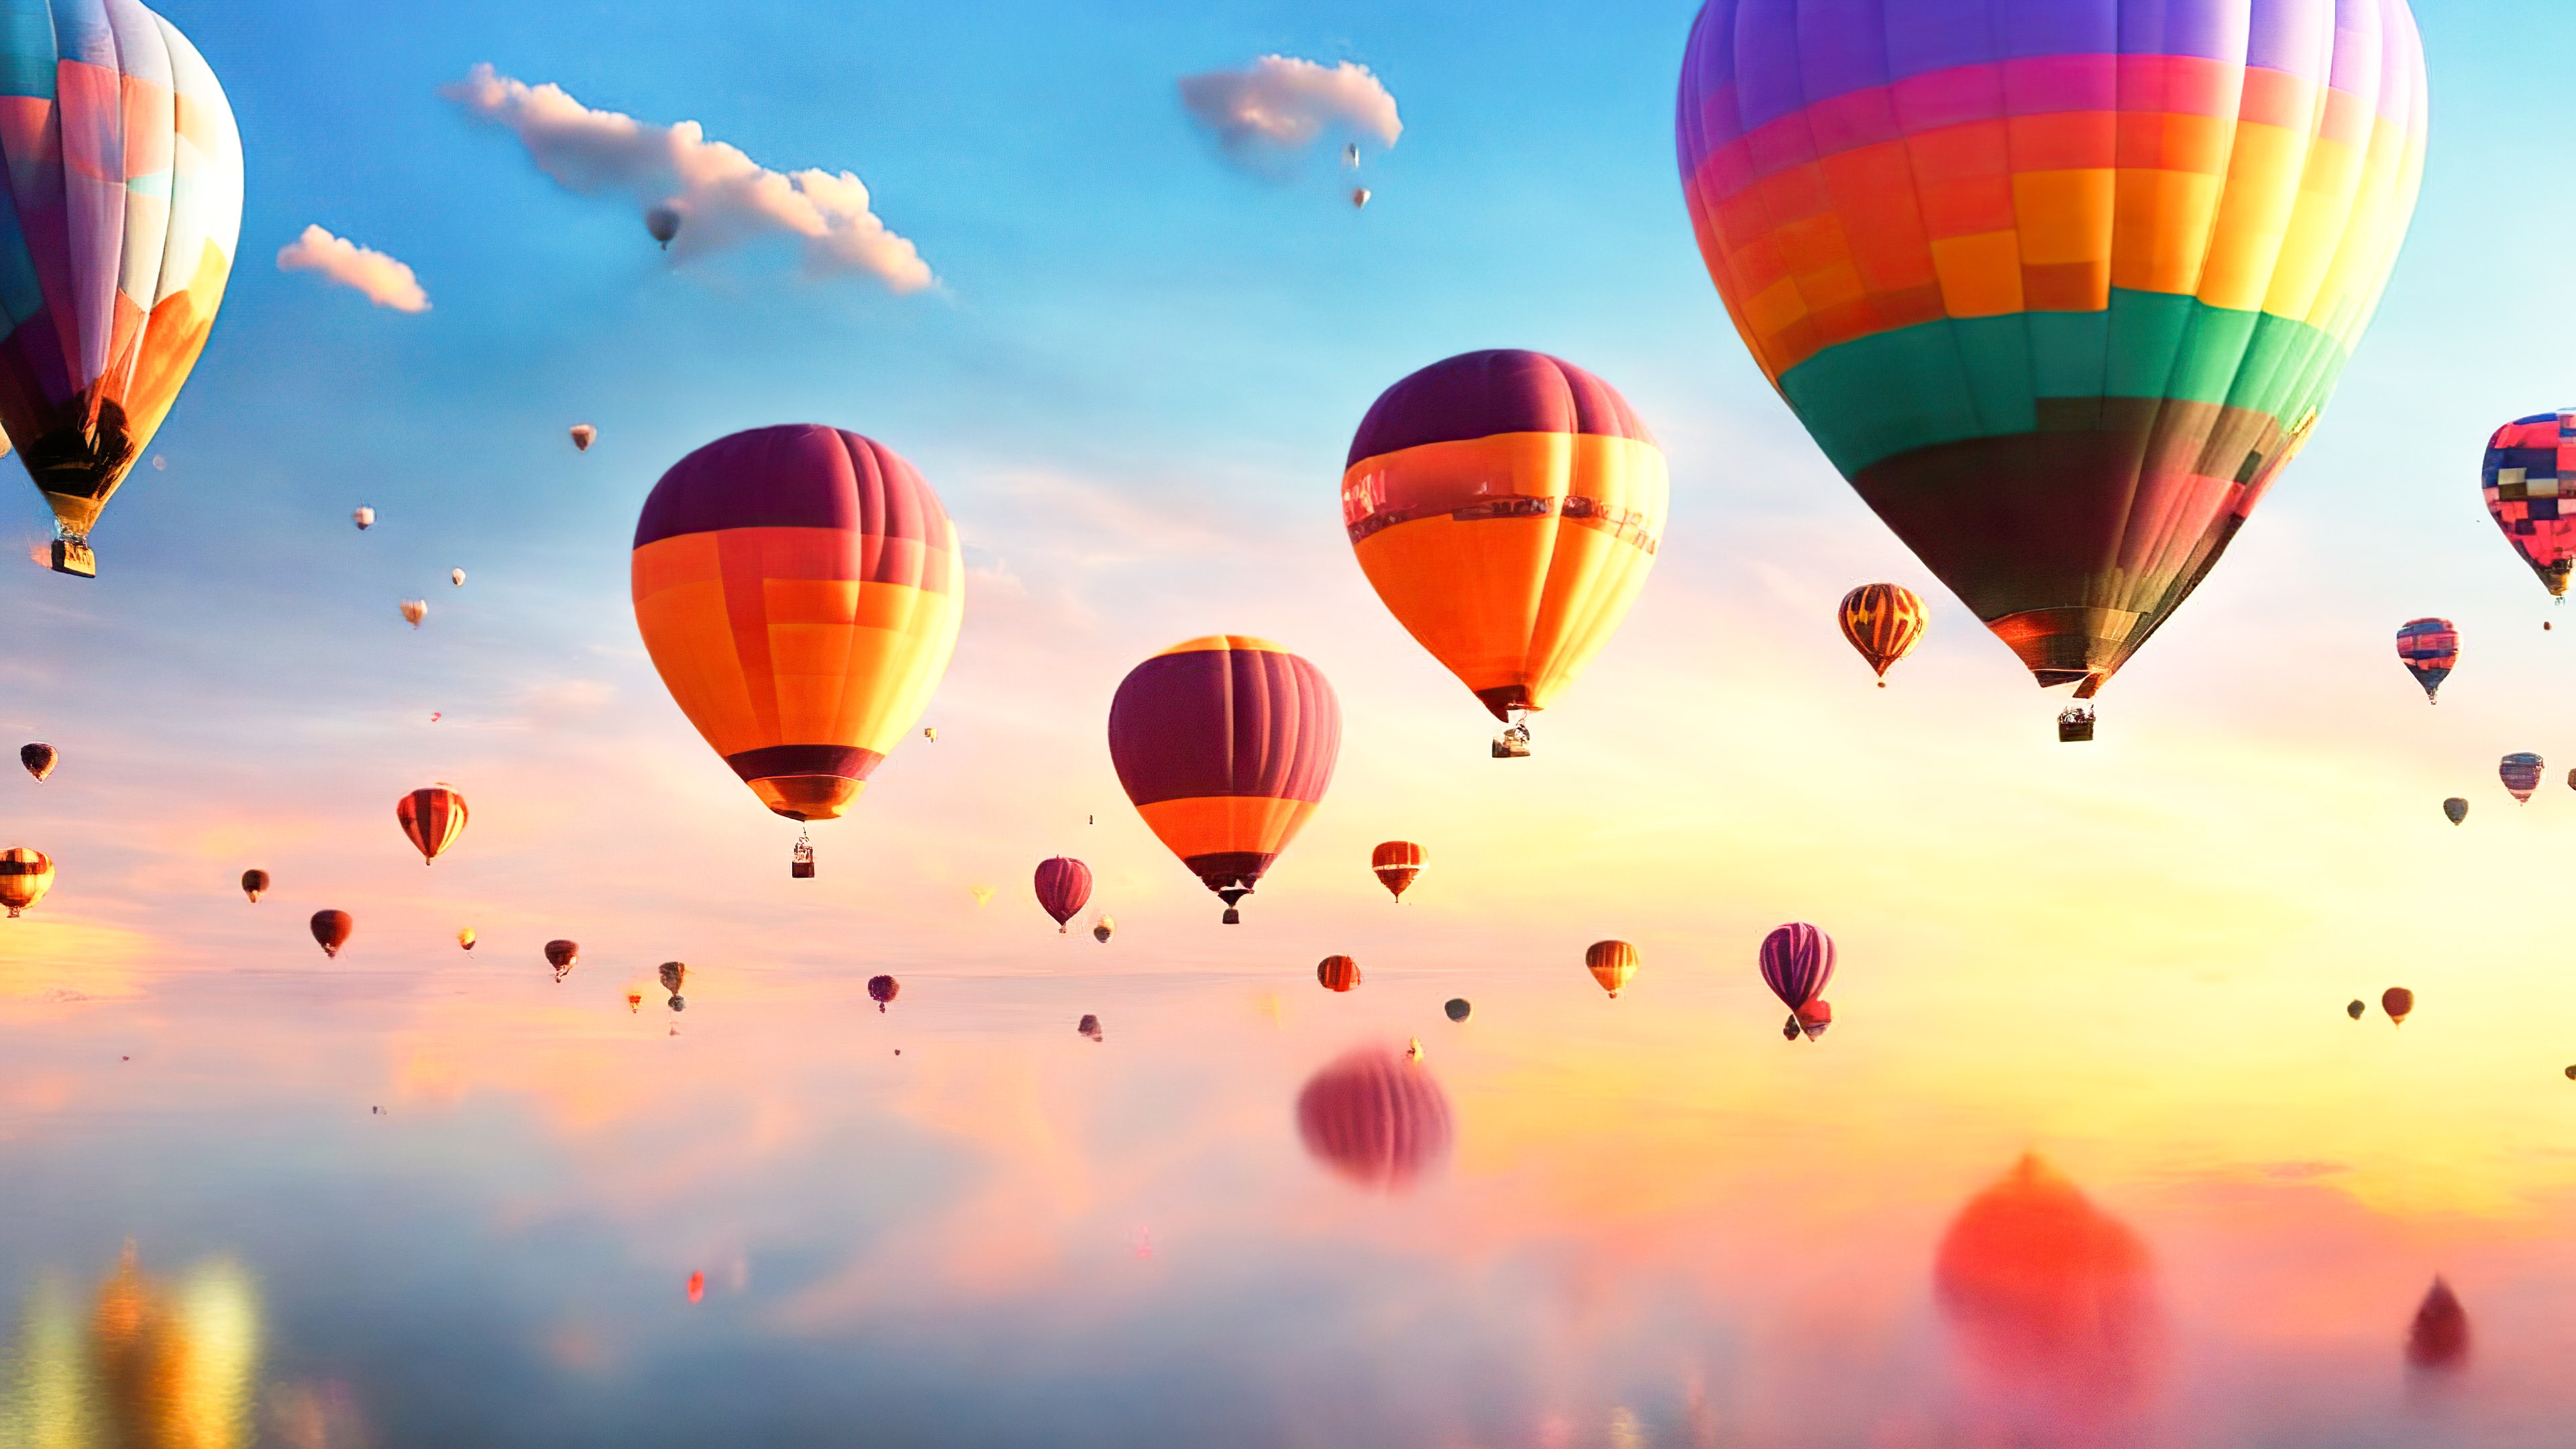 Ornez votre écran avec un ciel fantasque et rêveur rempli de montgolfières flottantes et colorées au lever du soleil avec notre fond d'écran nature en ultra HD.